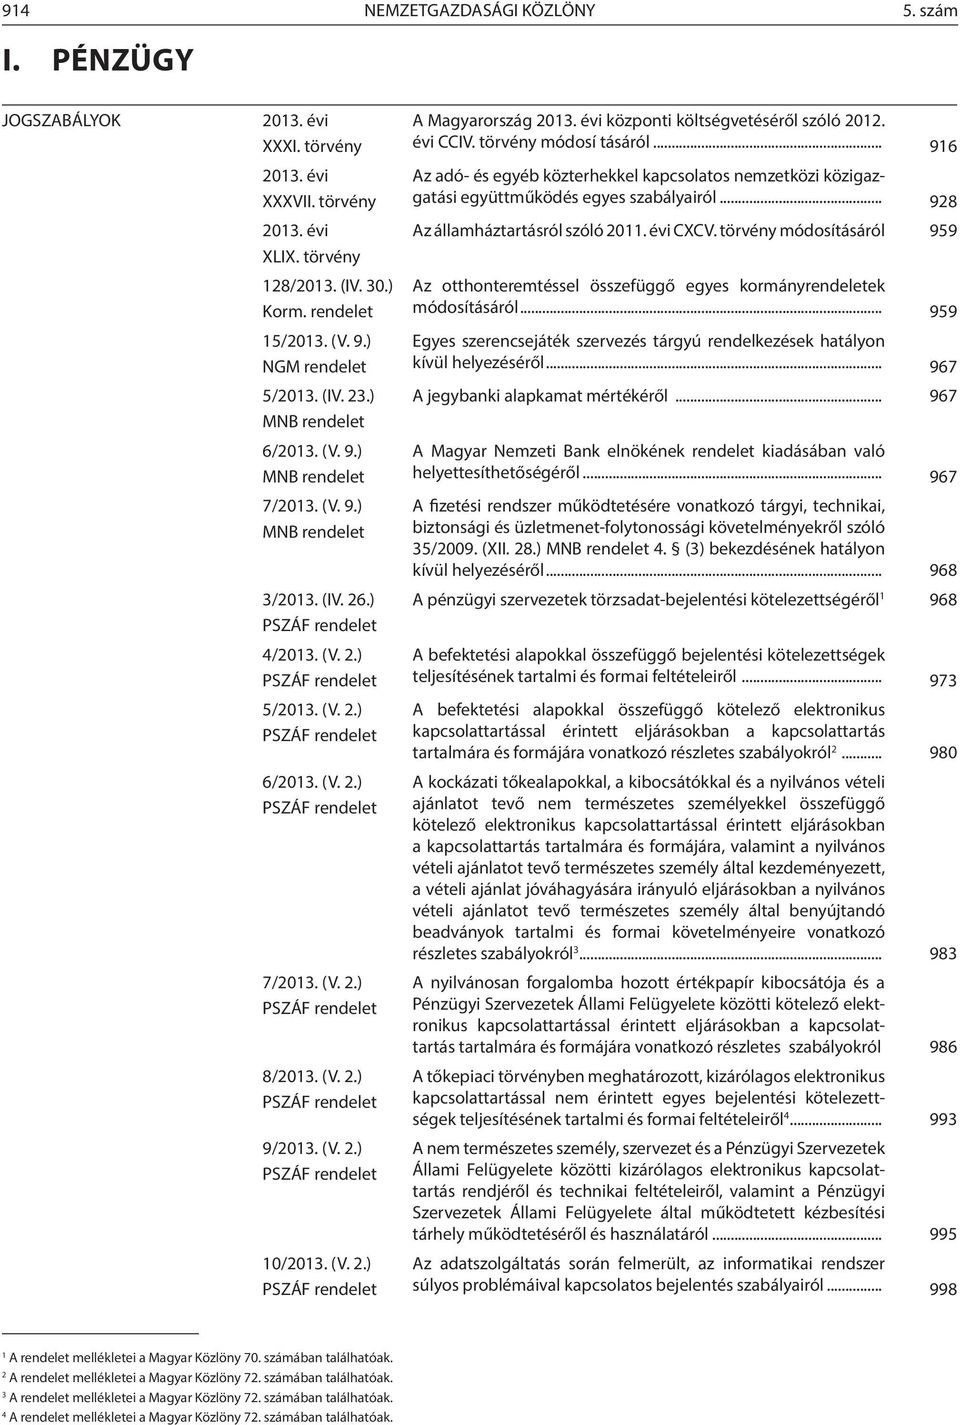 (V. 2.) PSZÁF rendelet 7/2013. (V. 2.) PSZÁF rendelet 8/2013. (V. 2.) PSZÁF rendelet 9/2013. (V. 2.) PSZÁF rendelet 10/2013. (V. 2.) PSZÁF rendelet A Magyarország 2013.